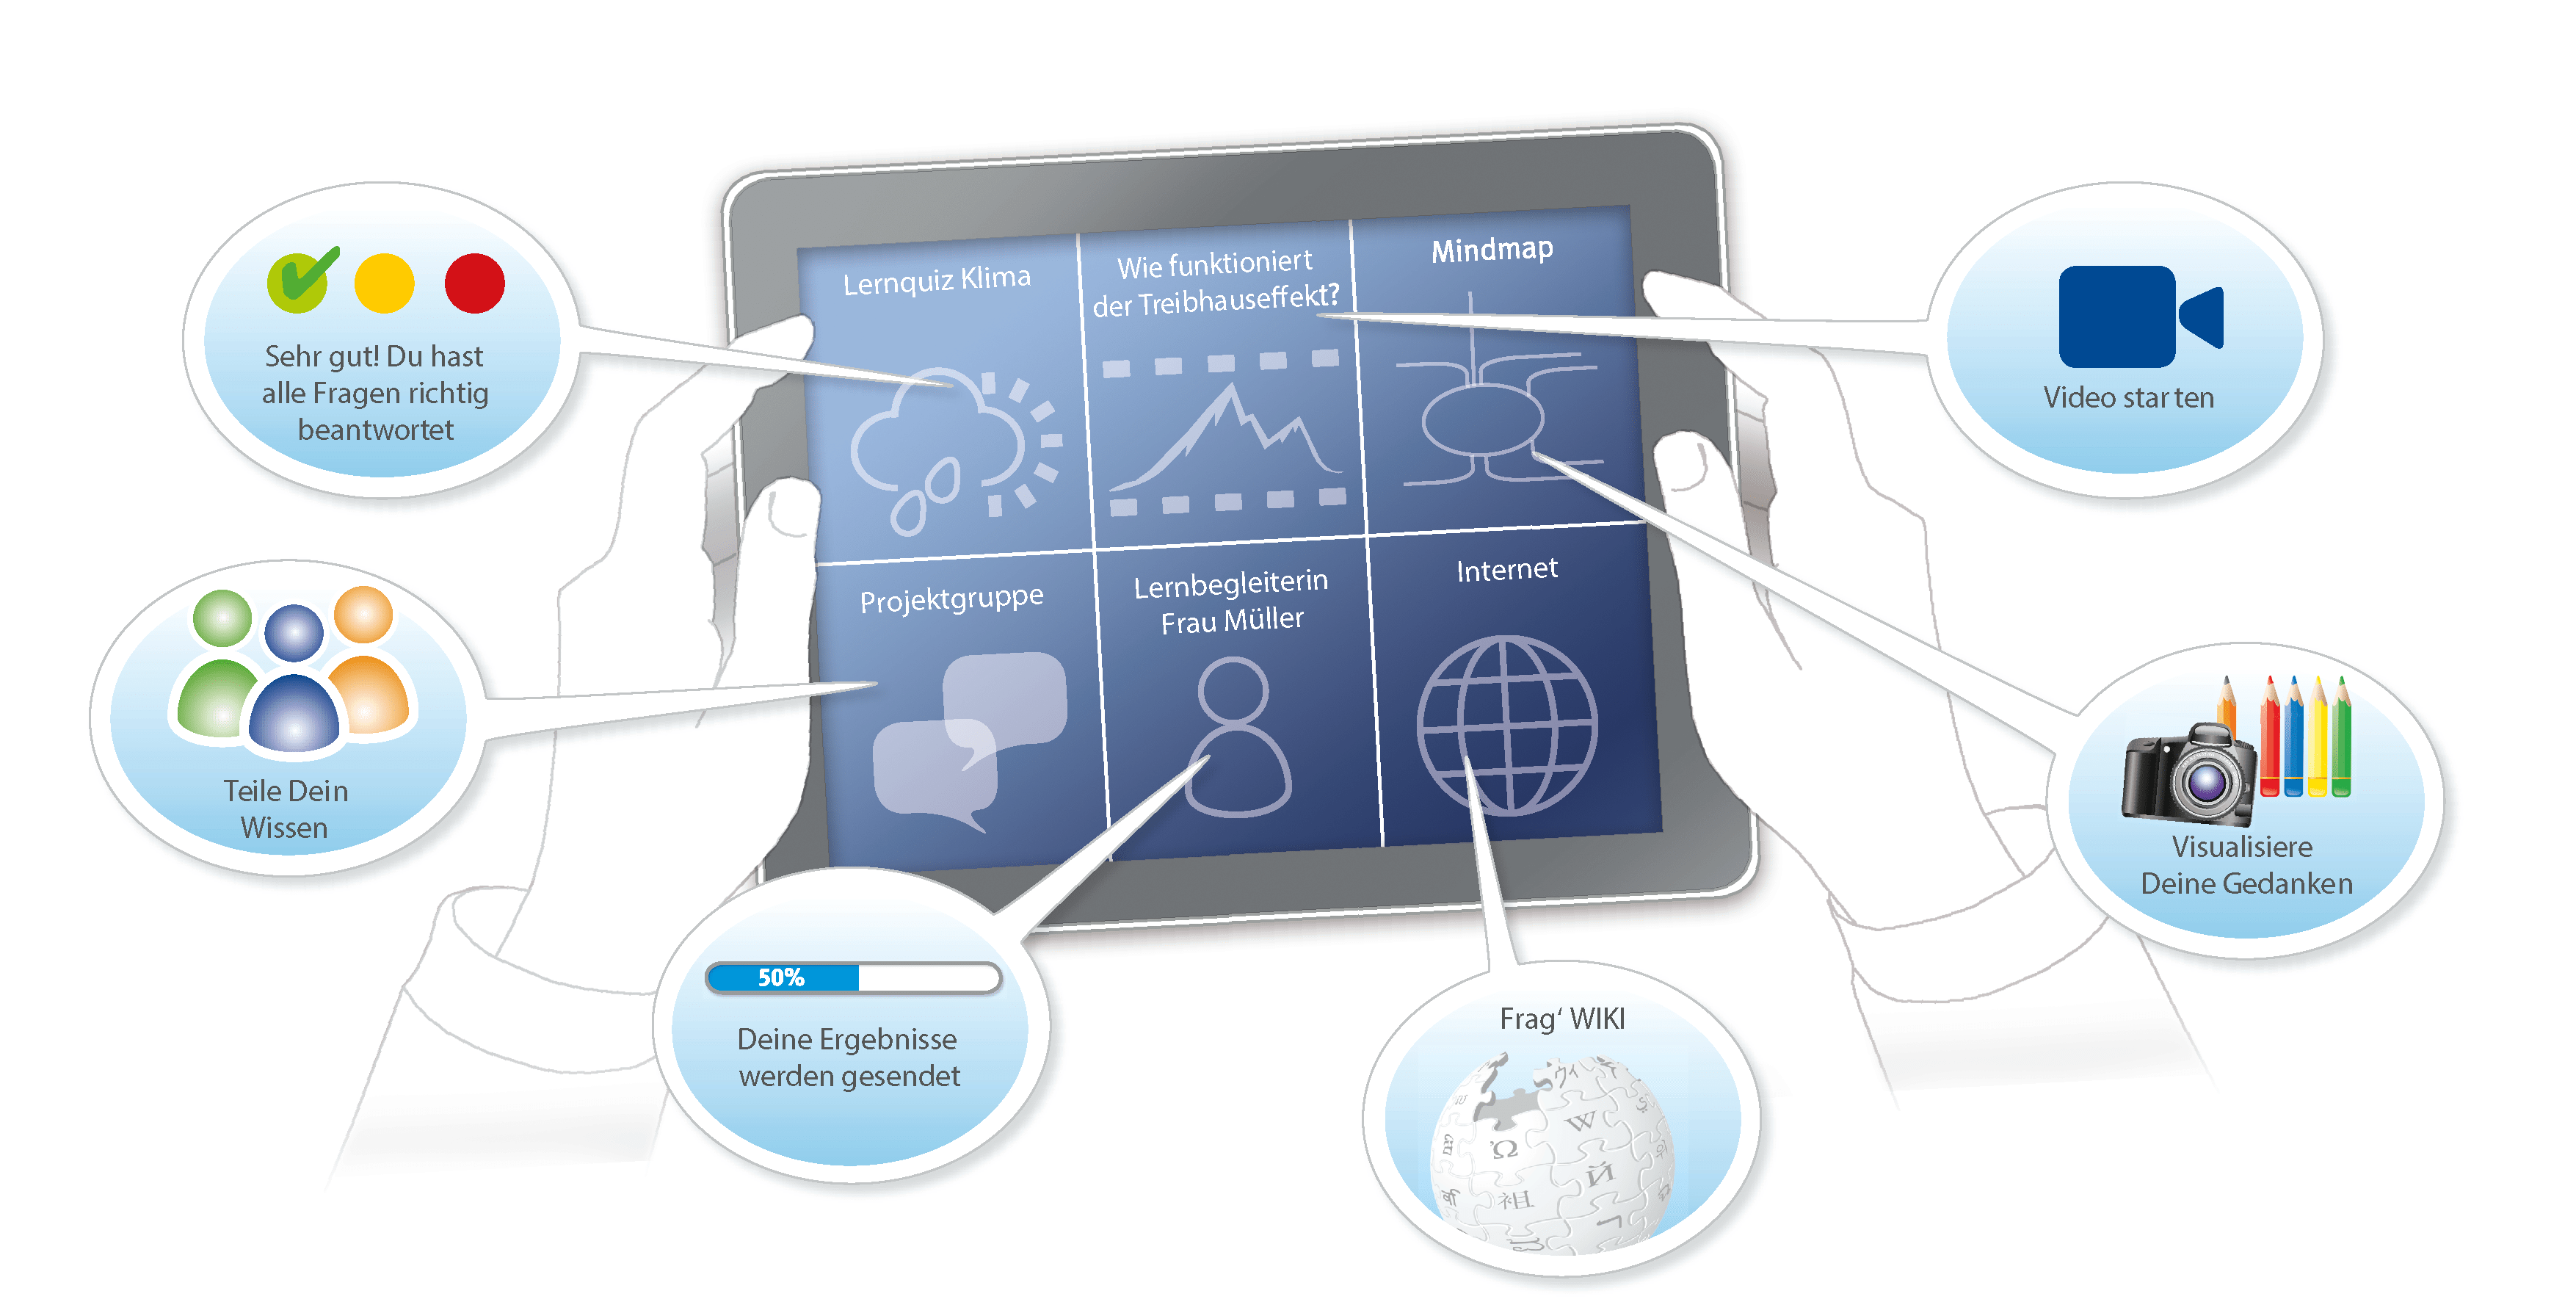 Editorial Illustration für Redaktionelles über Schule: Infografik in Form eines Tablet-Displays, auf dem die Interaktionsmöglichkeiten digitaler Lernmaterialien und Schulbücher, wie Feedback, Lernergebnisprüfung, vernetzte Projektarbeit, Internetrecherche, Lernquizspiele und so weiter dargestellt sind